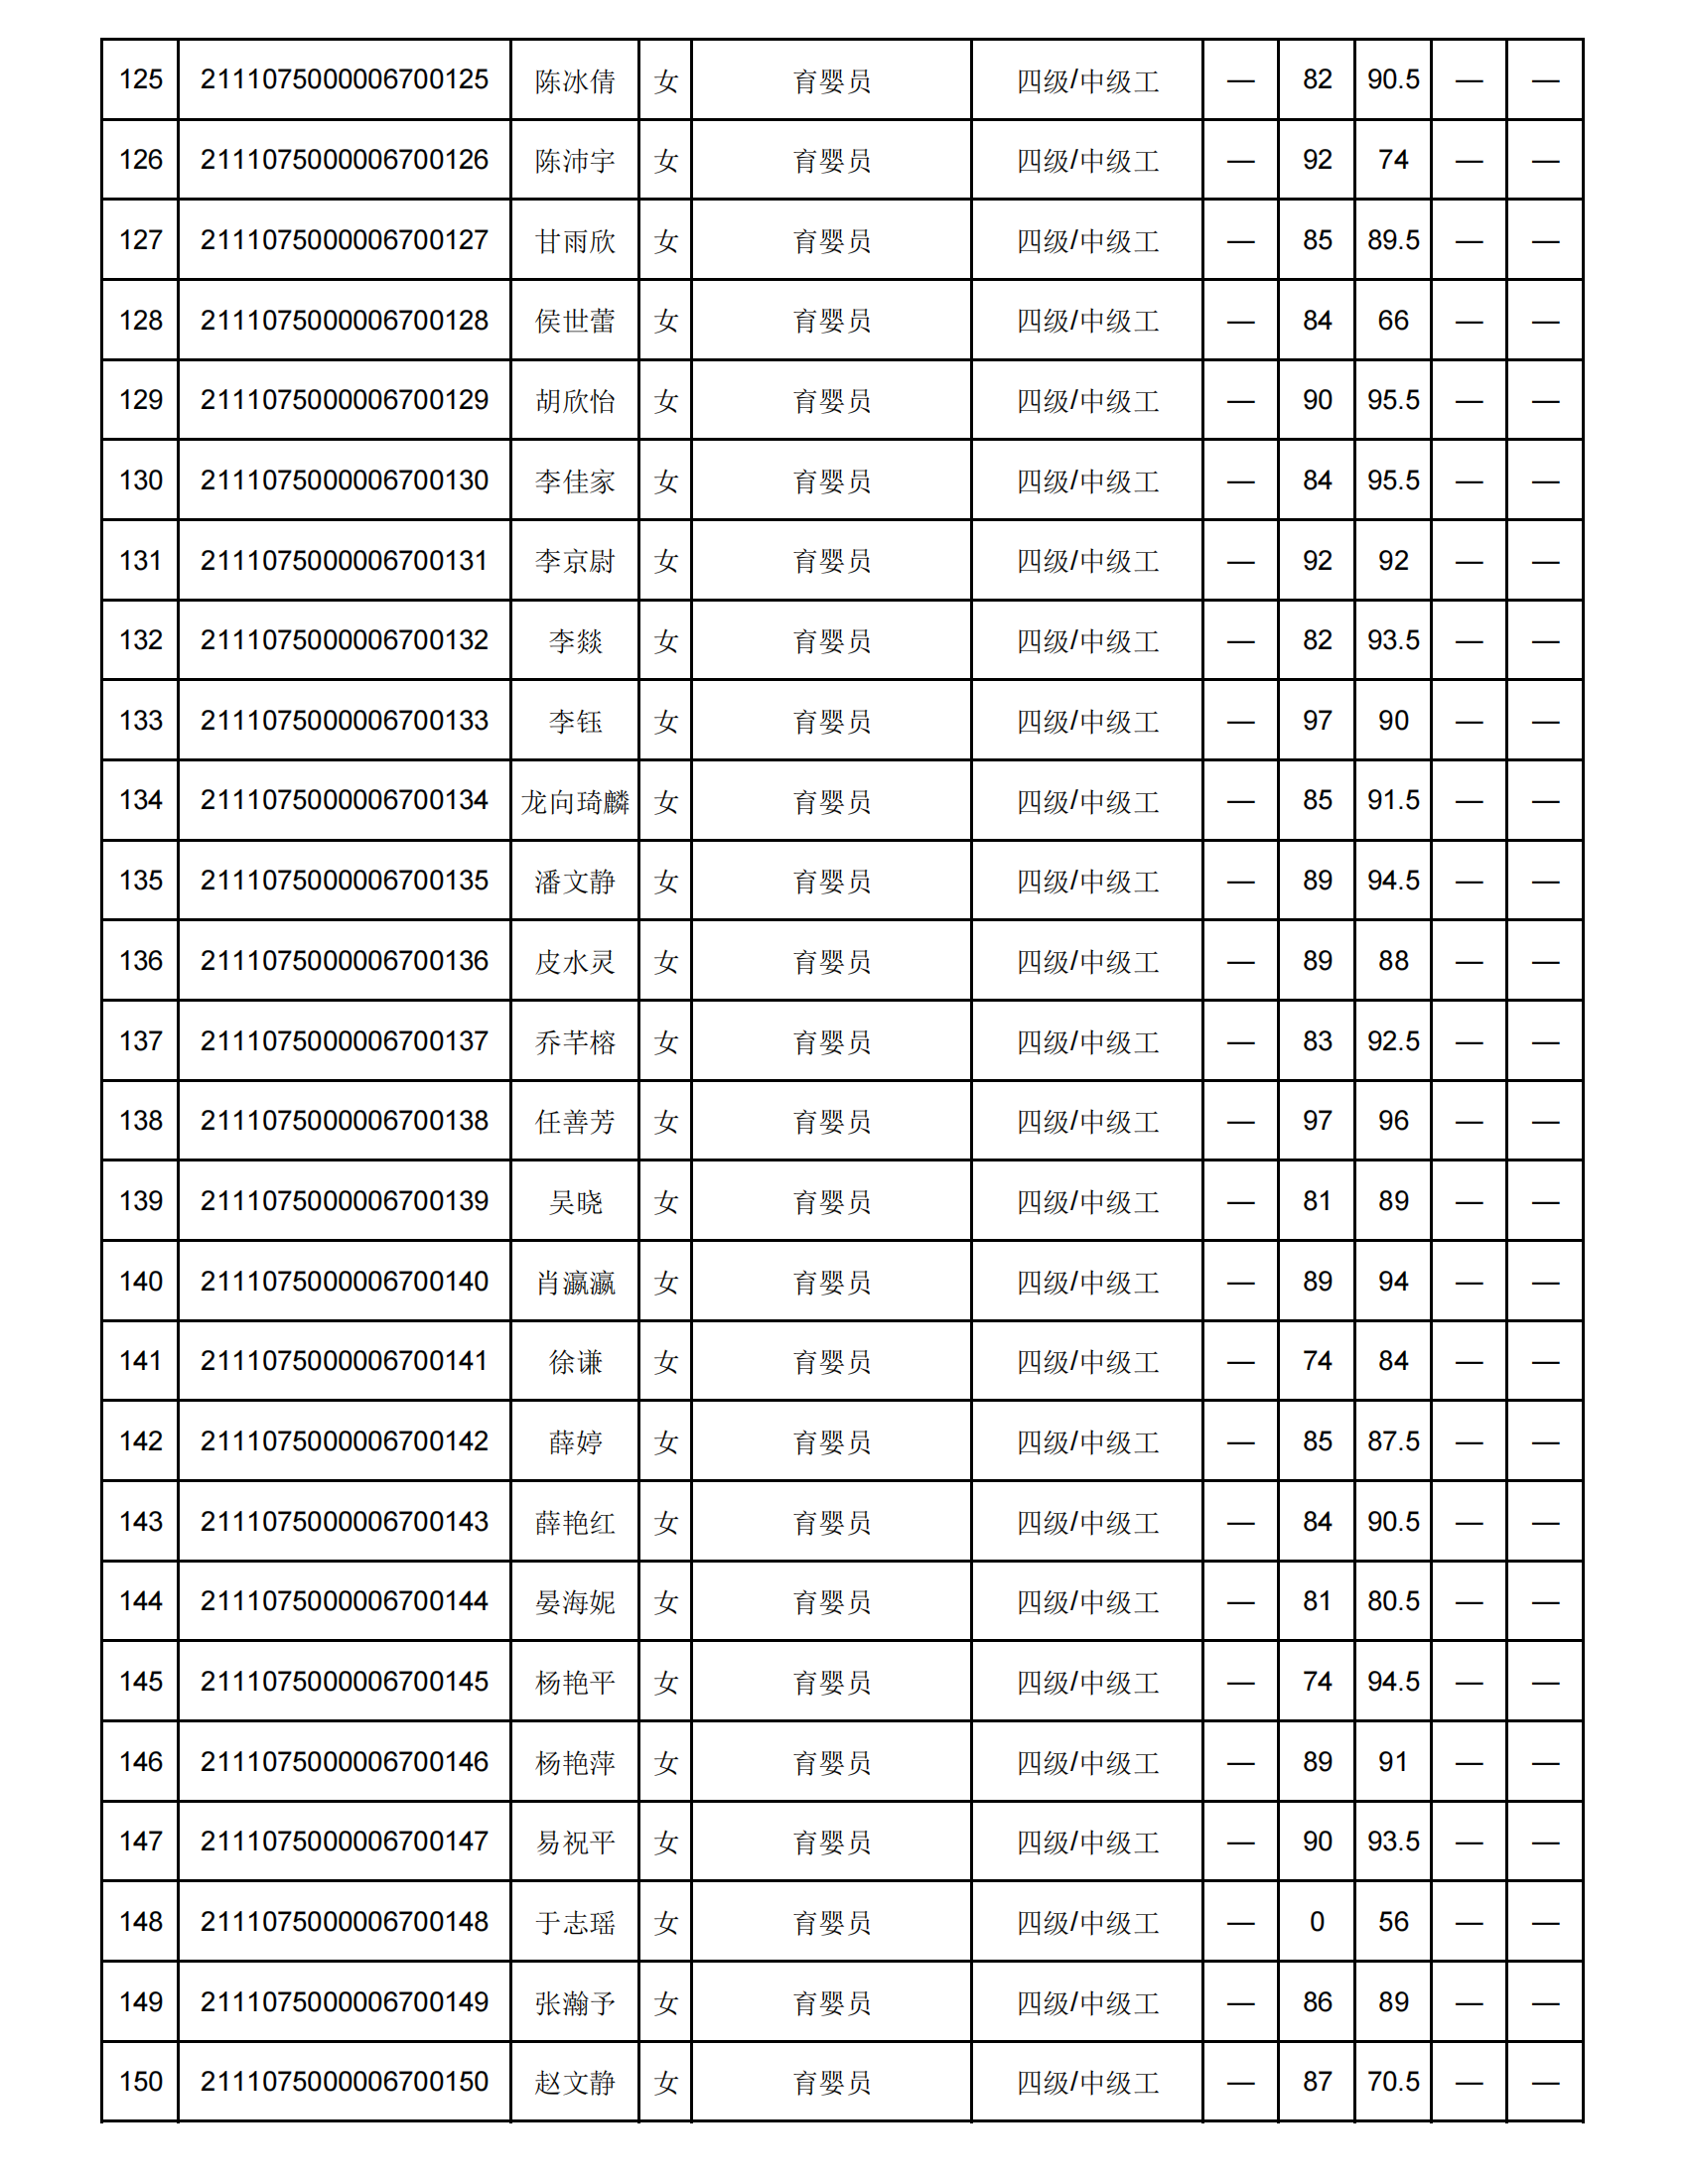 弘一职校第16批职业技能等级认定成绩花名册公示表(1)_05.png